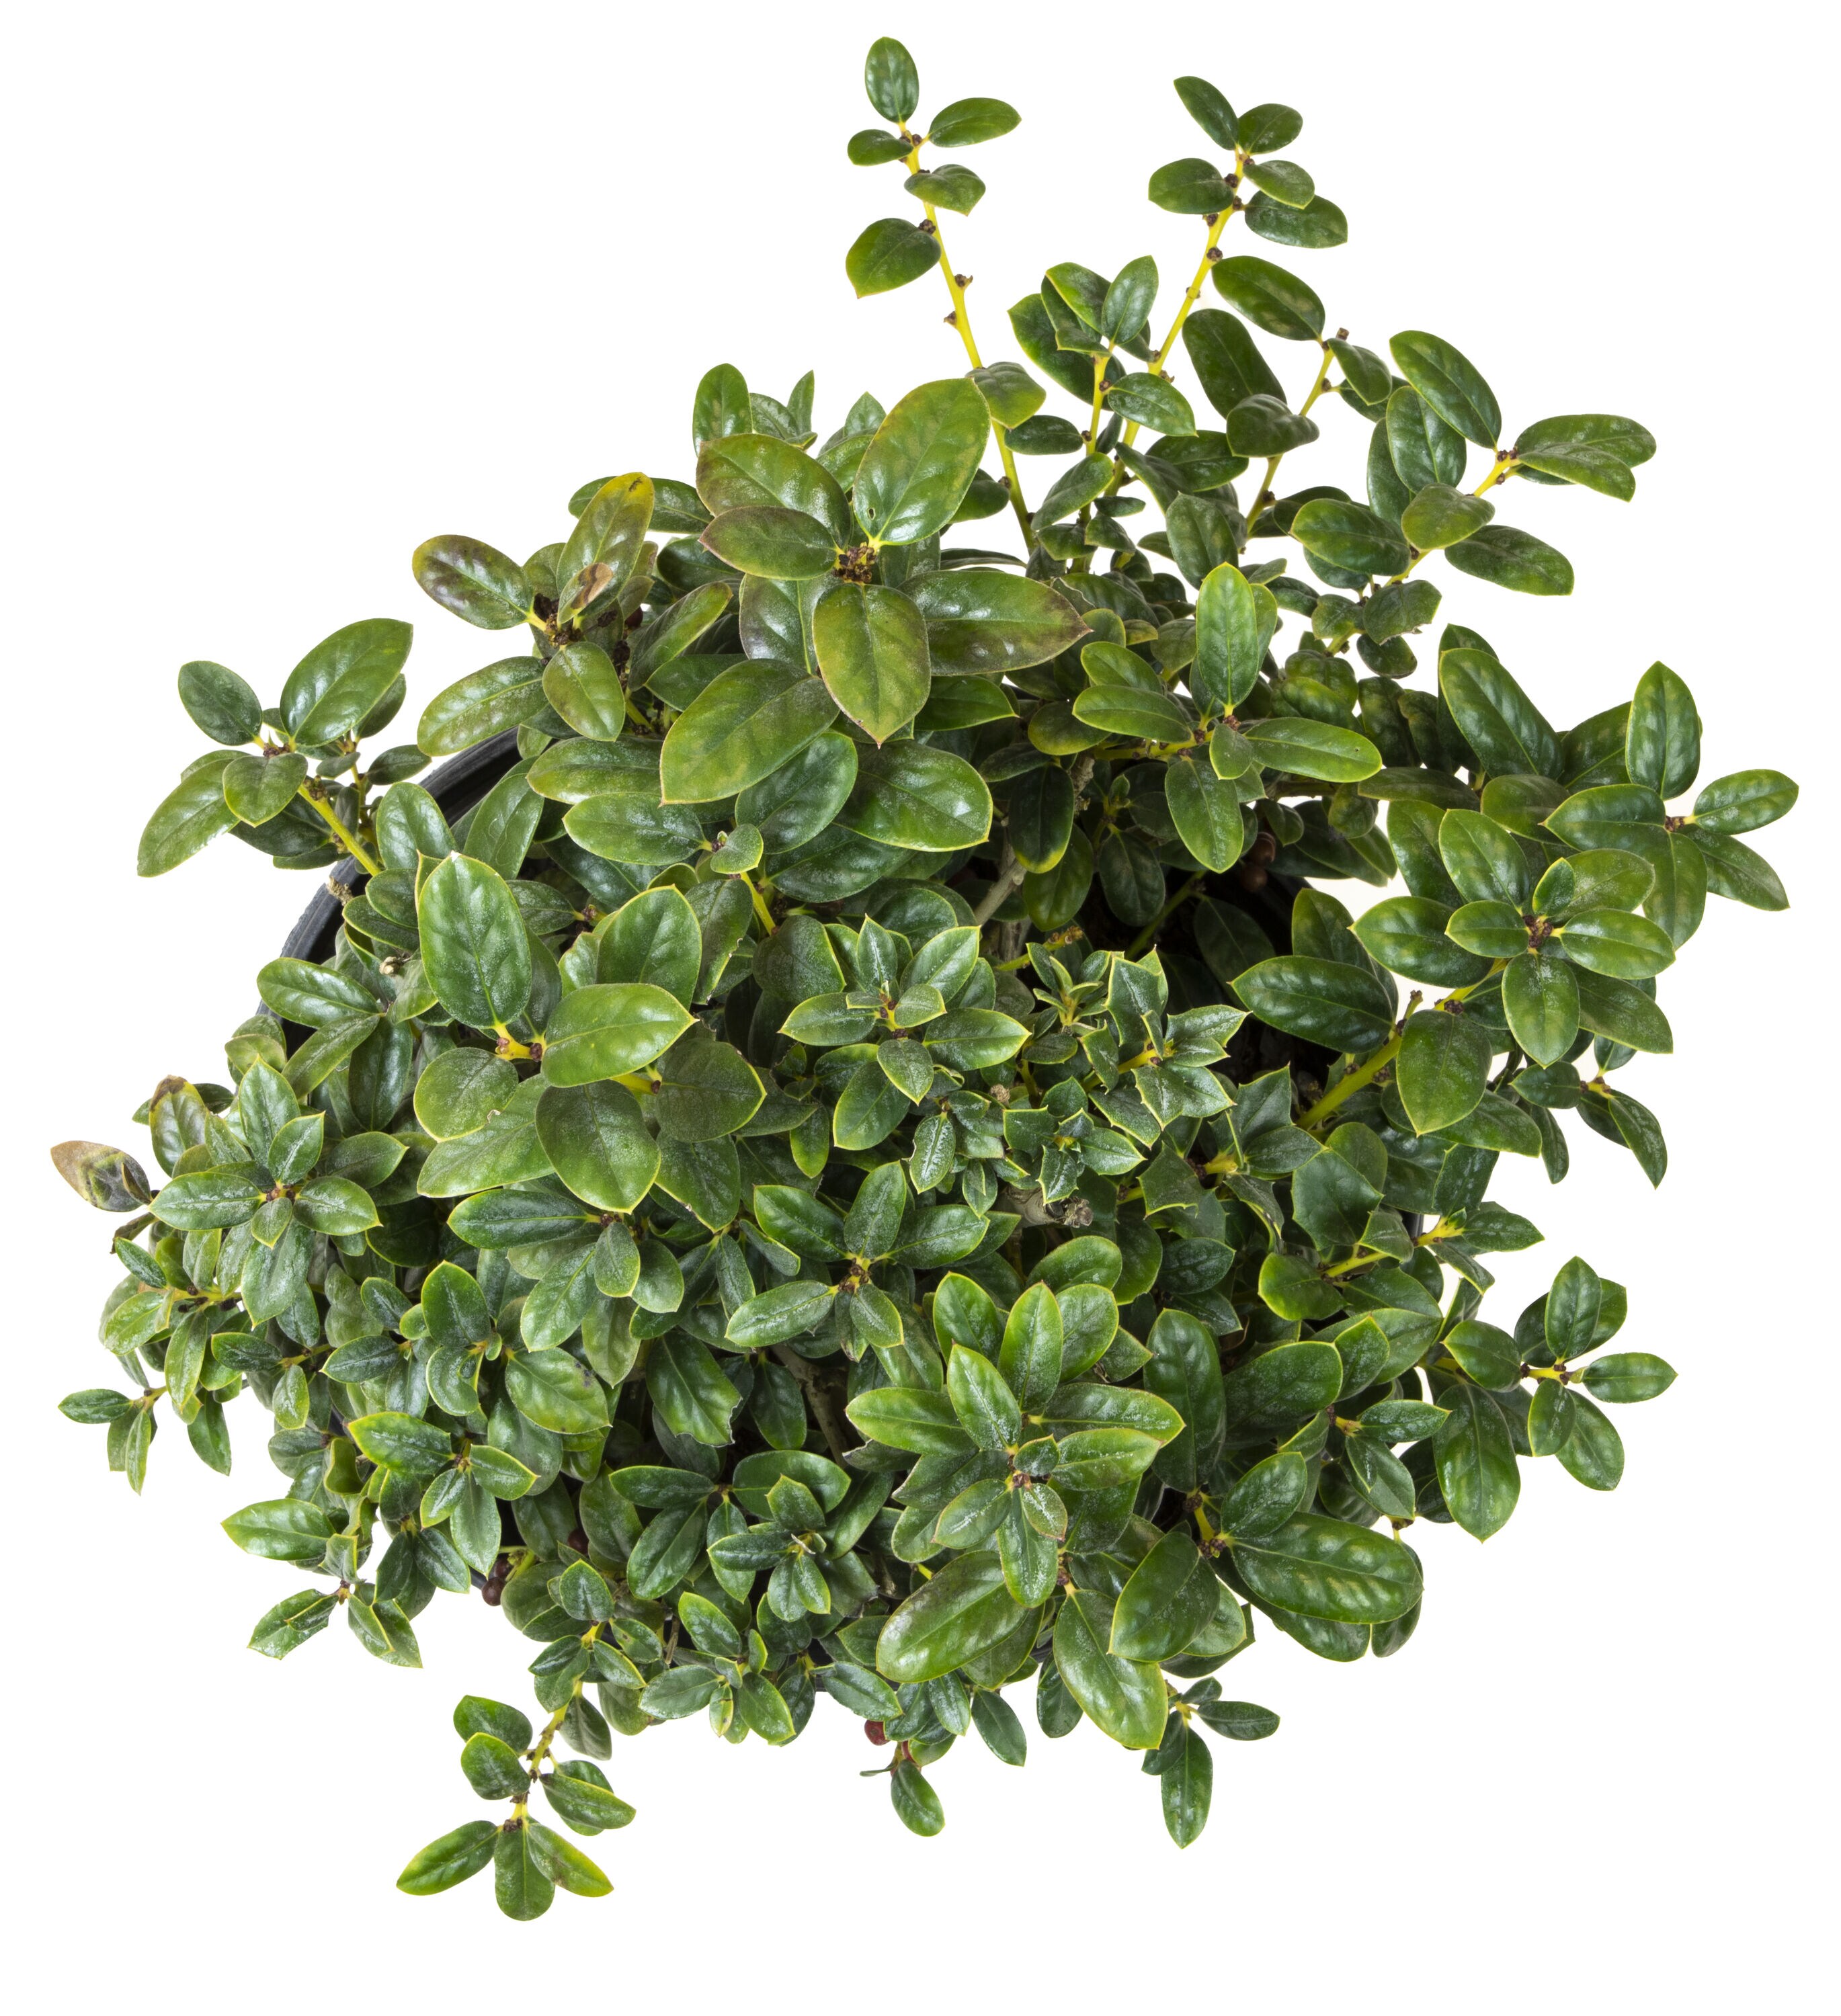 Altman Plants Dwarf Burford Holly Foundation/Hedge Shrub in 2.25-Gallon ...